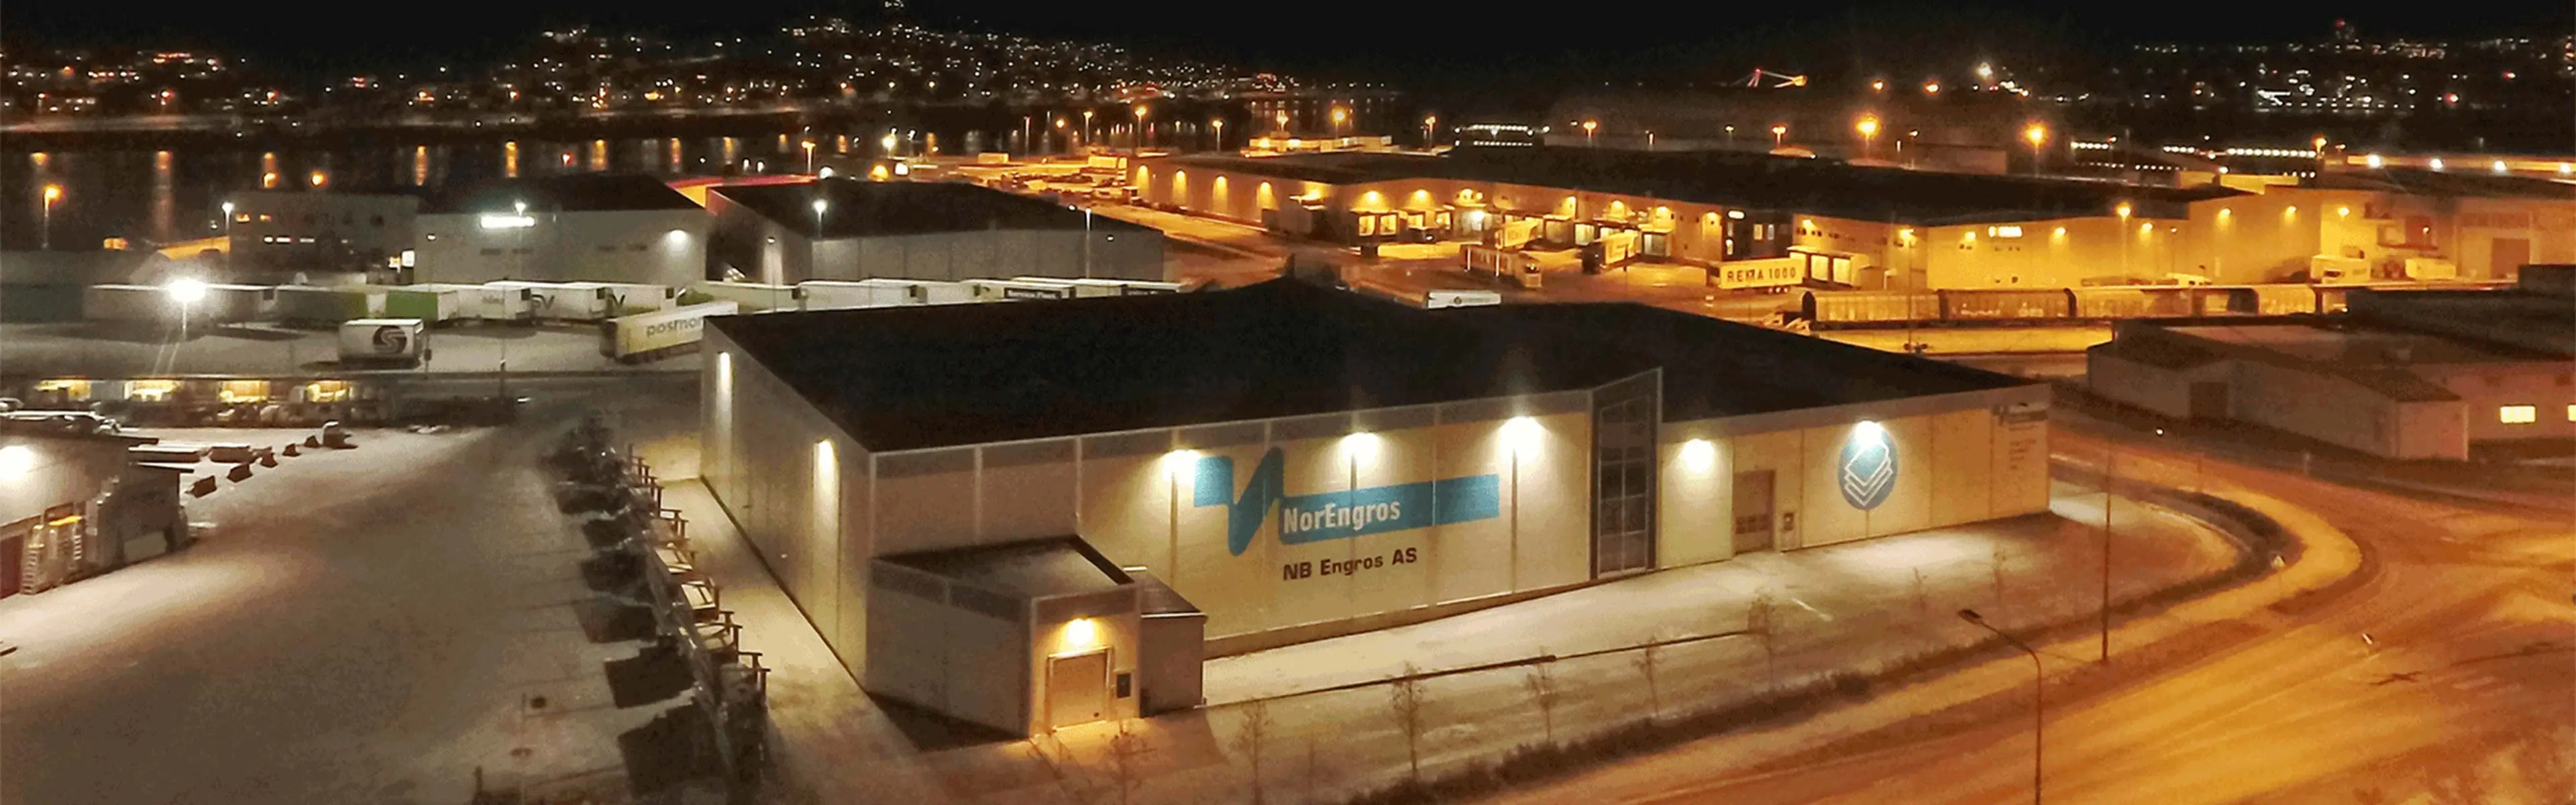 NB Engros sitt hovedkontor og lager ligger på Fagernes i Narvik